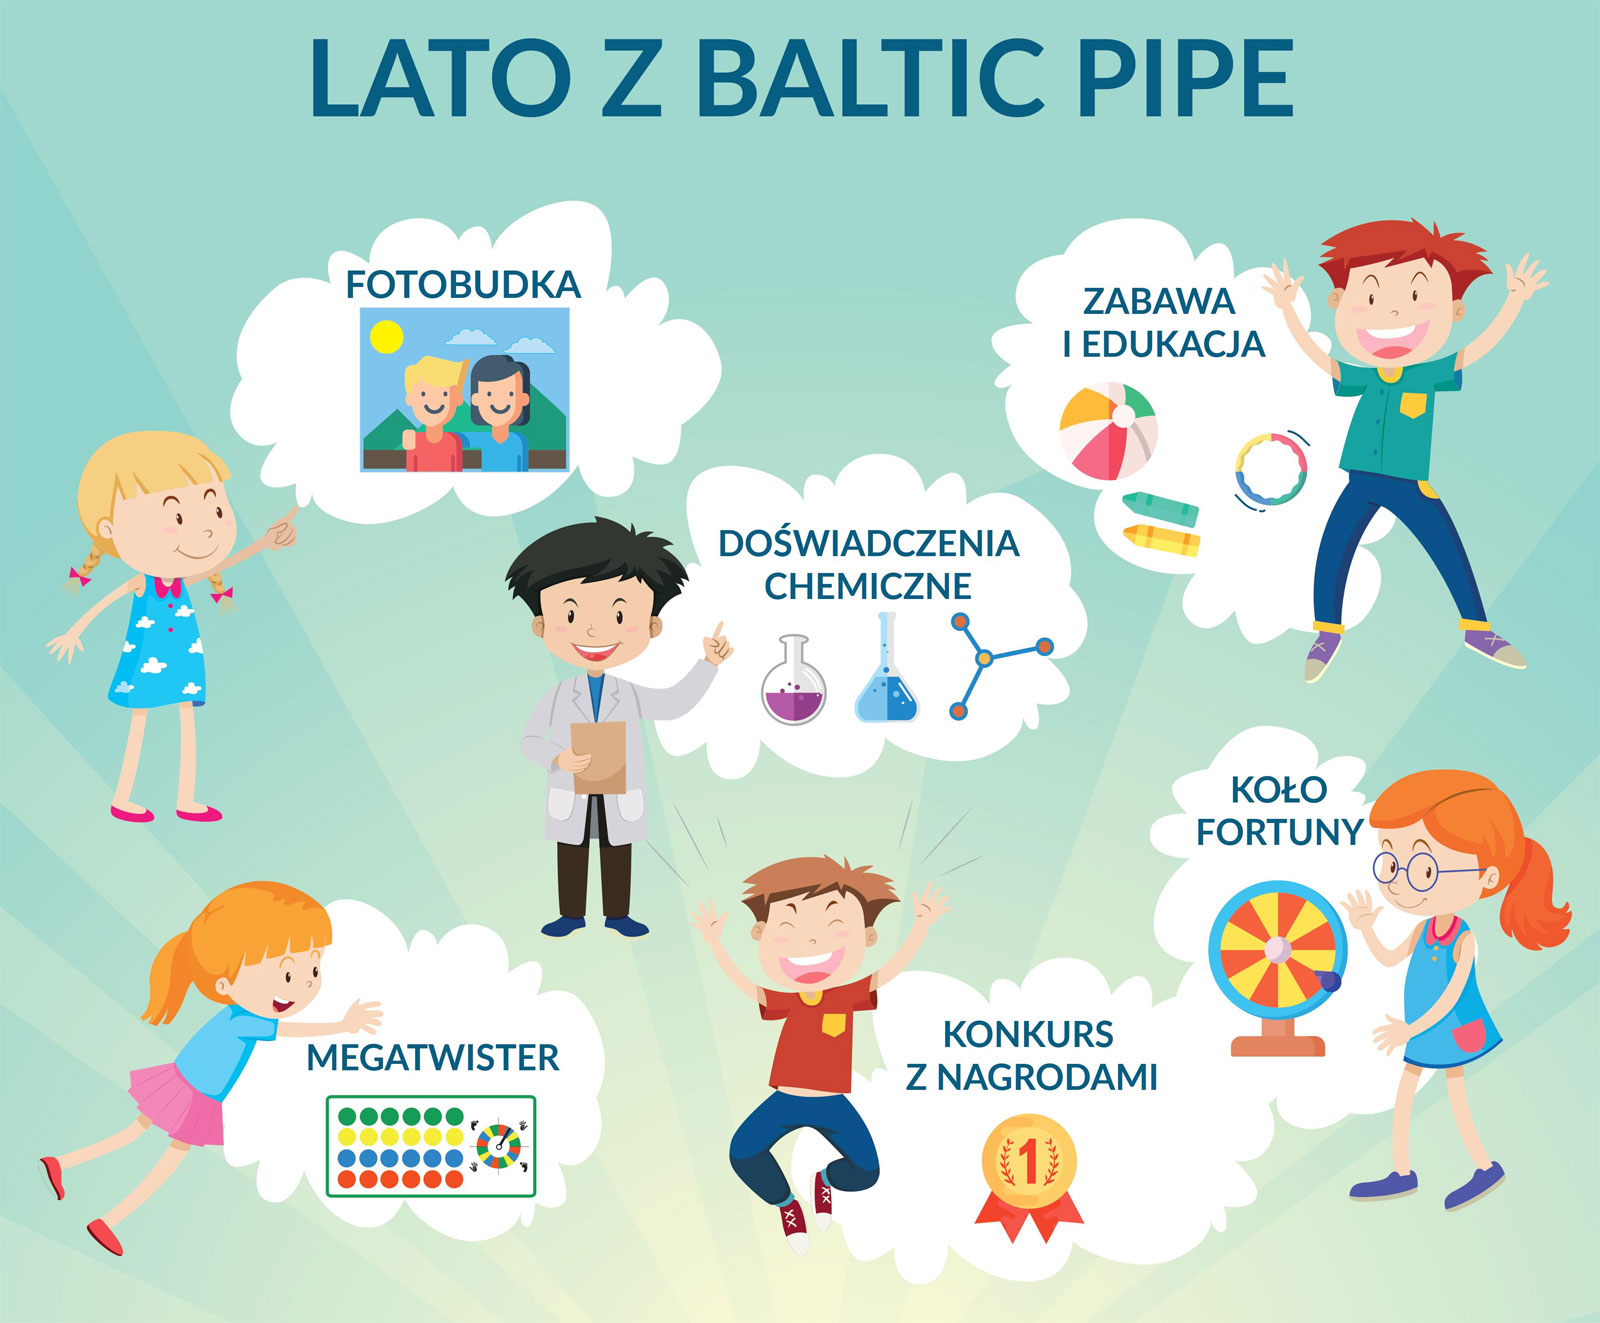 Pikniki "Lato z Baltic Pipe" w dniach 4-6 lipca